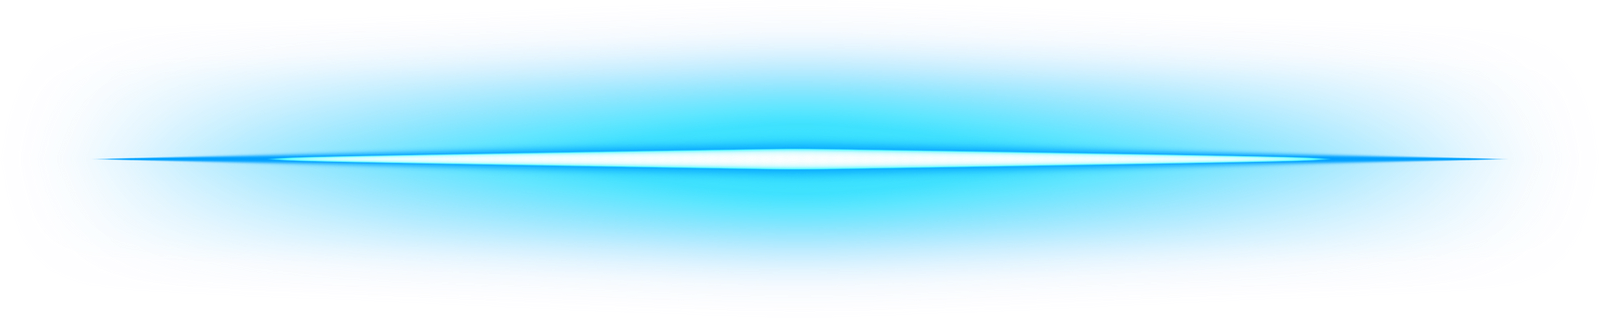 Glowing Blue Neon Line